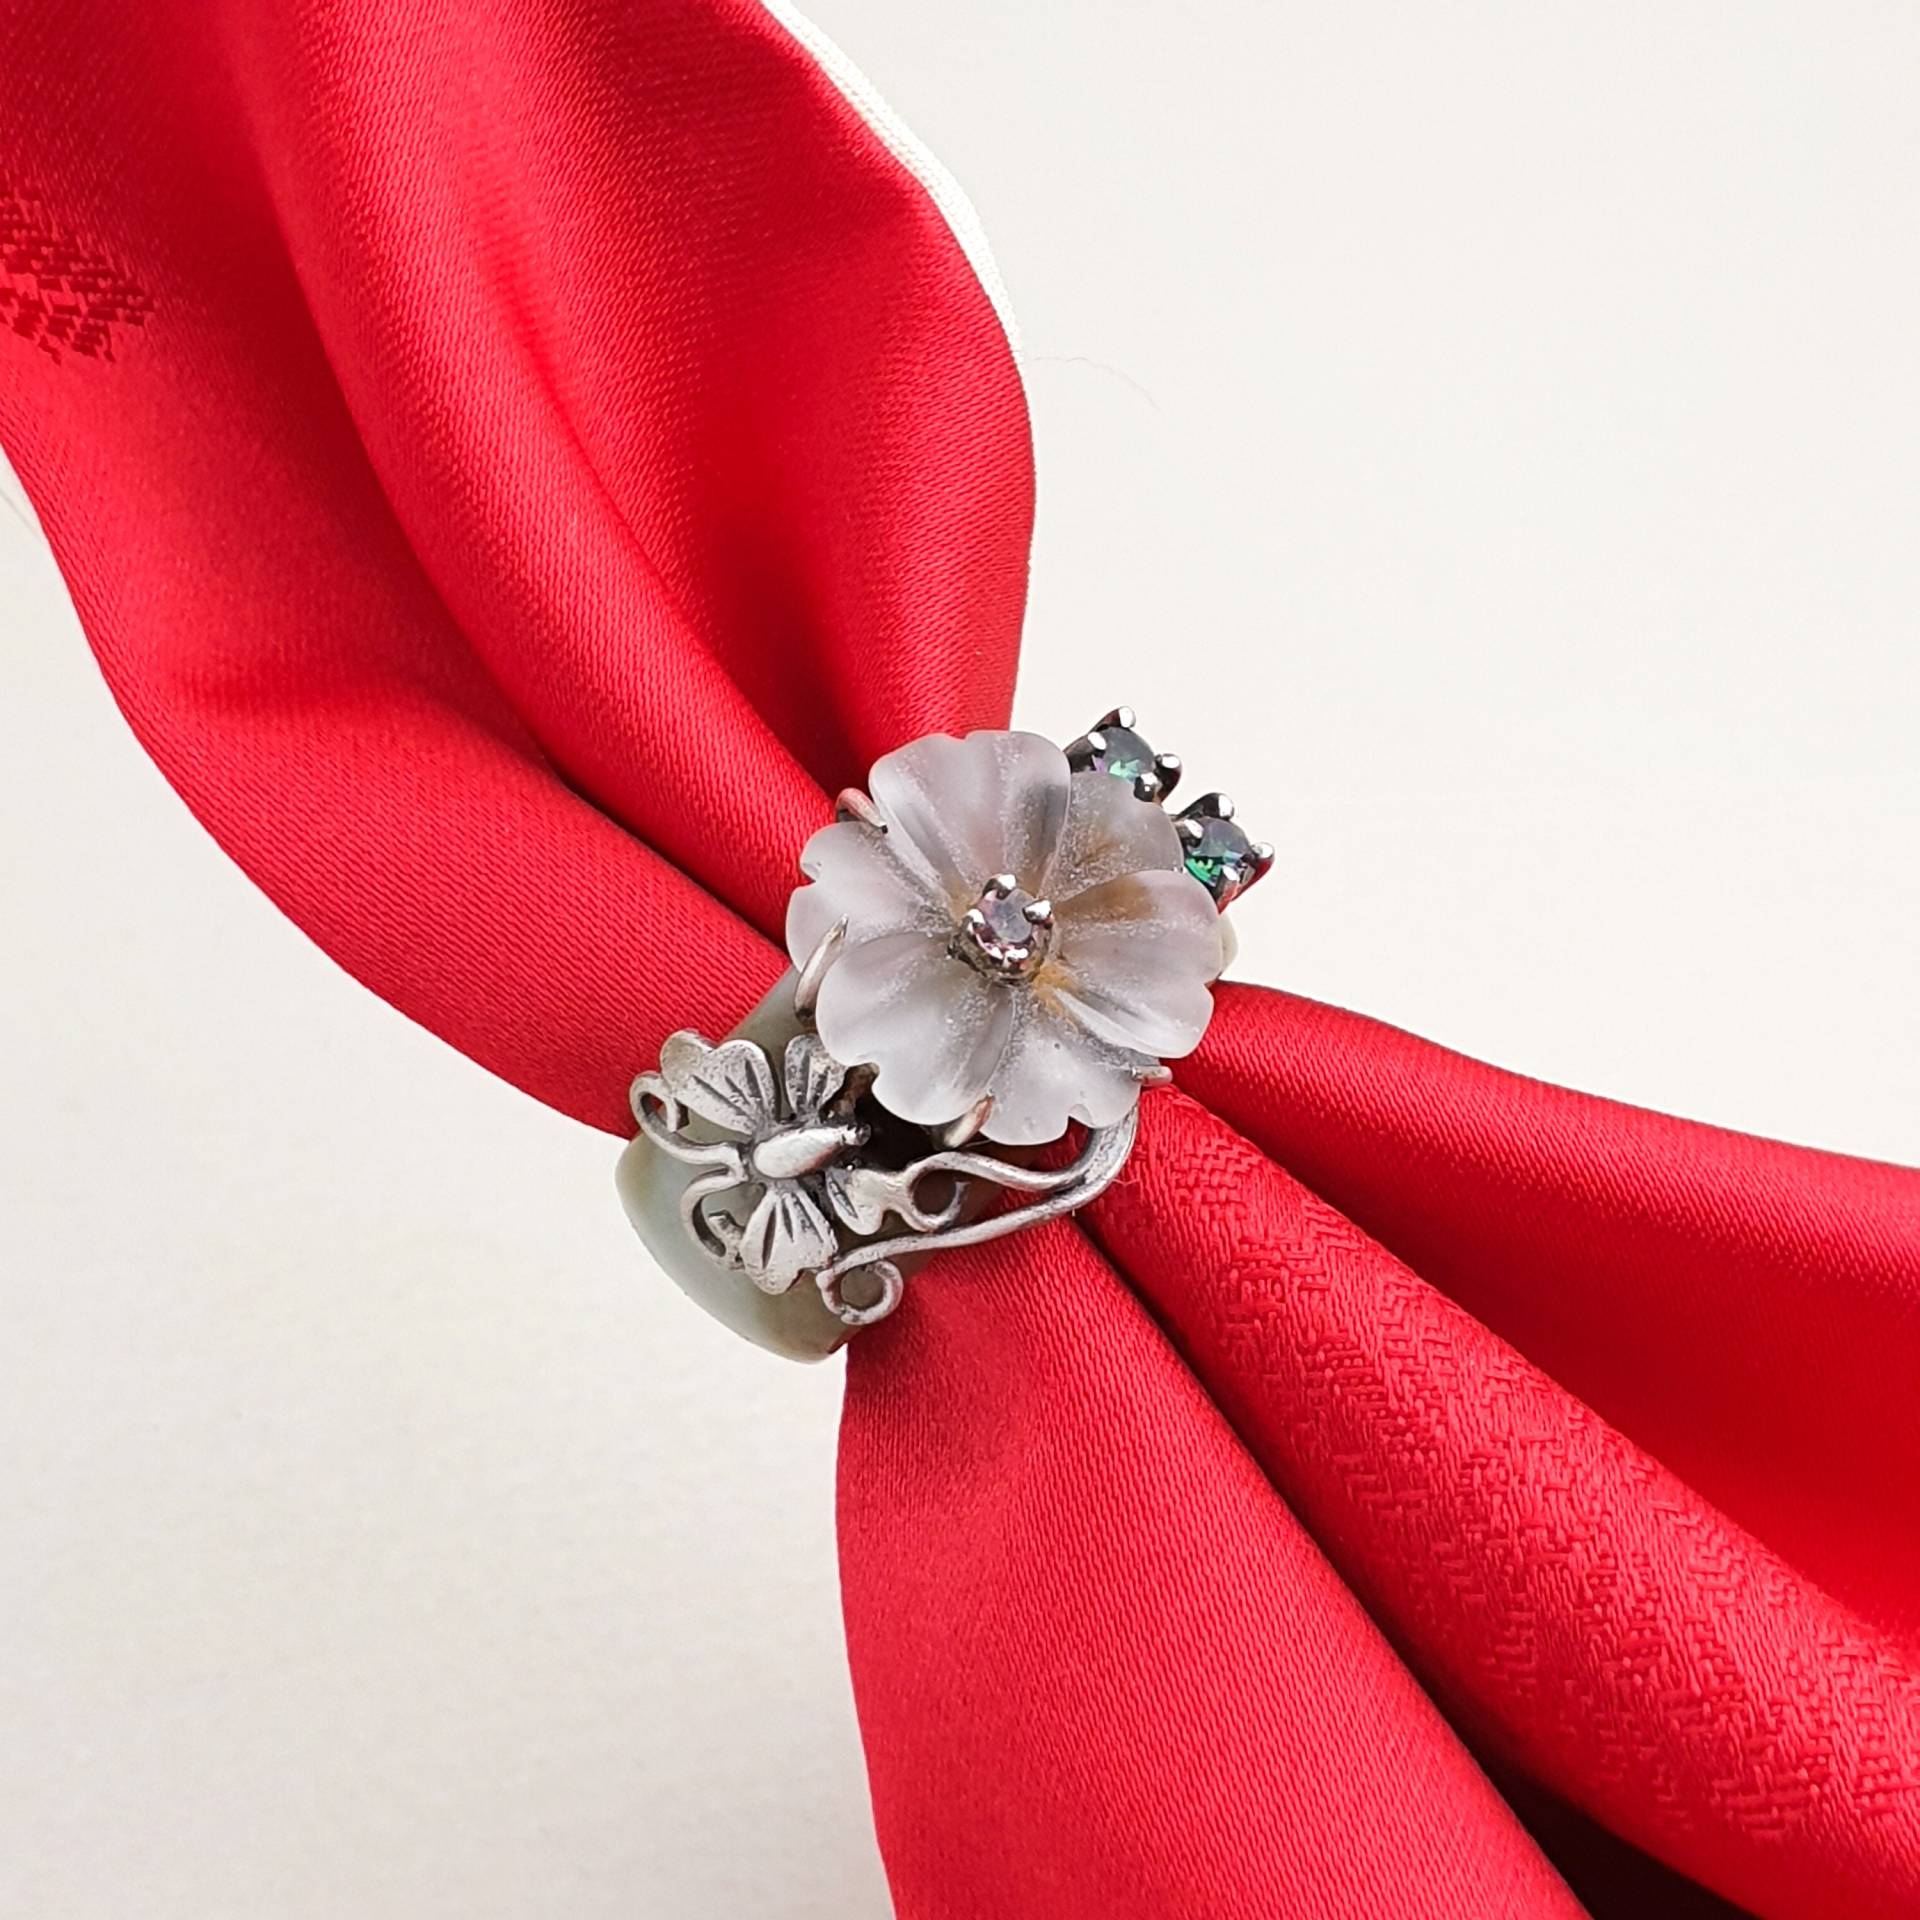 Edelstein Silber Ring Von Nassenka Ihre Größe Benutzerdefinierte Beste Freundin Geschenk Geburtstagsgeschenk Hanbok Korea von NASCHENKAseoul